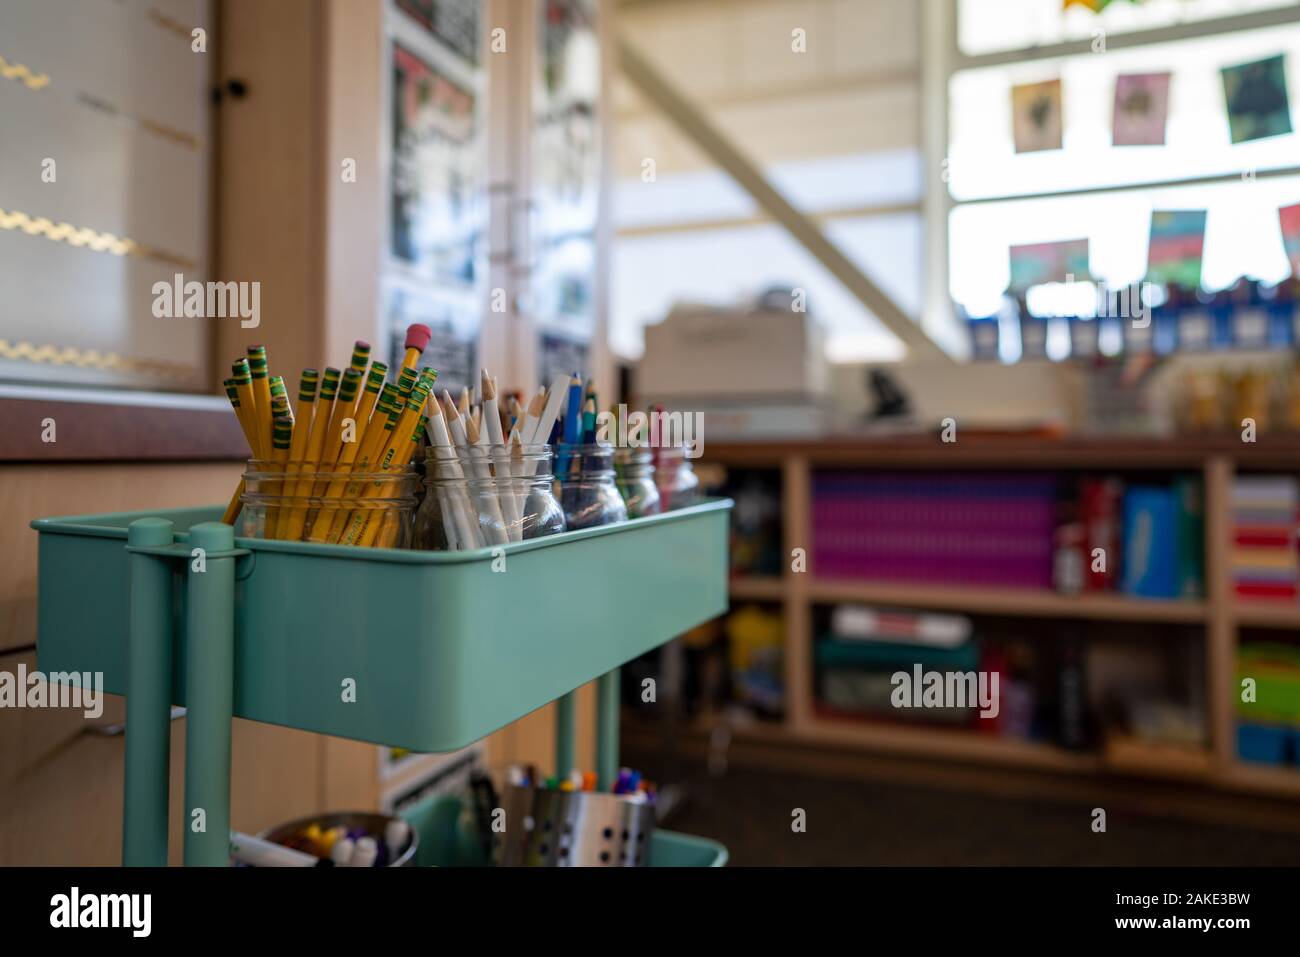 Teal carrello riempito con vasi di matite colorate per una scuola elementare classe d'arte Foto Stock